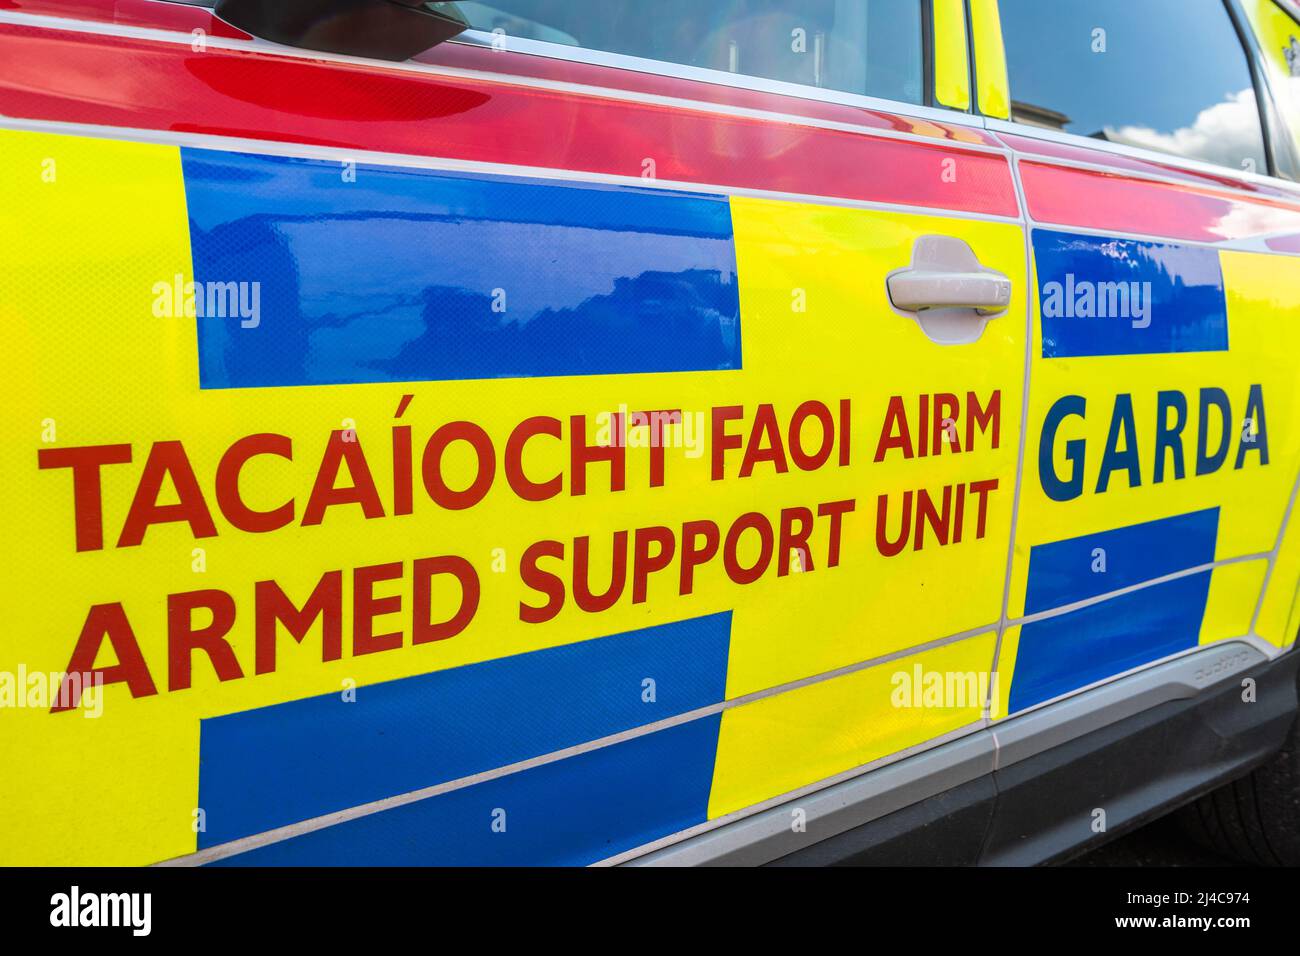 Ein Fahrzeug der bewaffneten Unterstützungseinheit Garda Síochána (Irish Police Force). Stockfoto